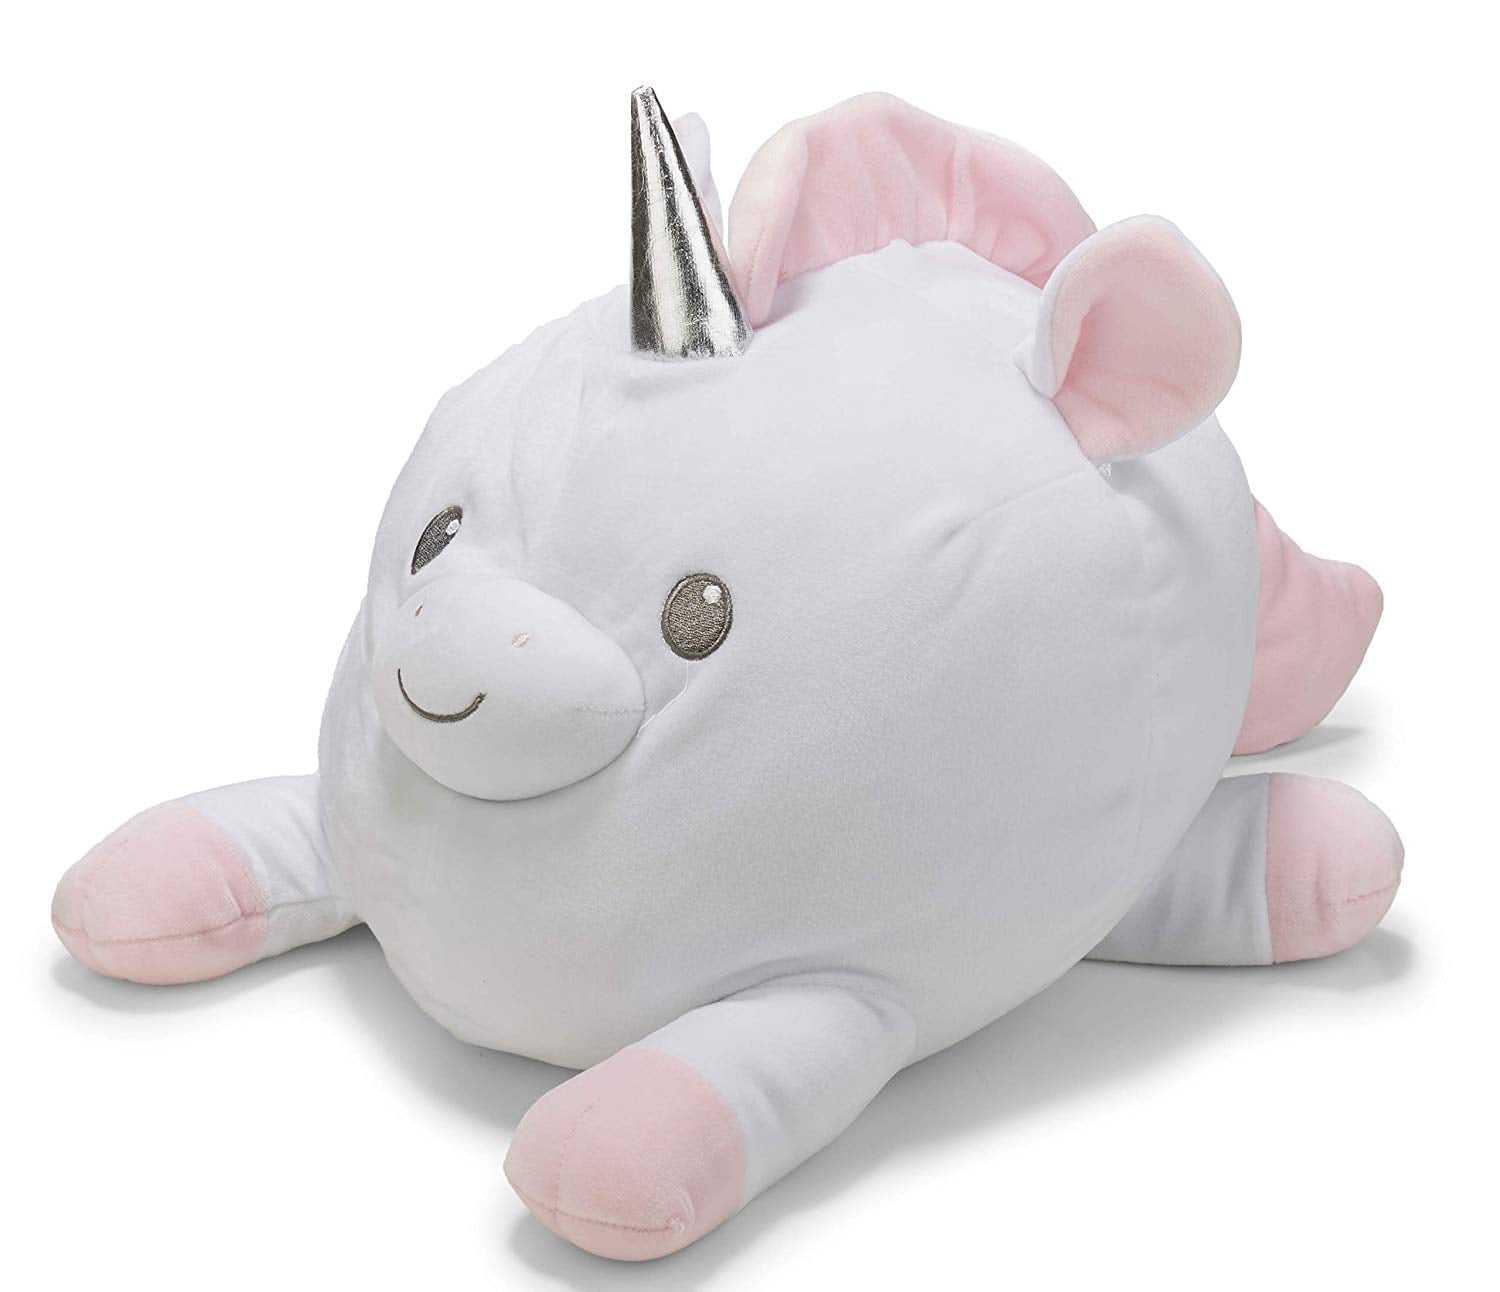 Snuggle Pals Large Plush Cuddly Unicorn Soft Toy 30cm 